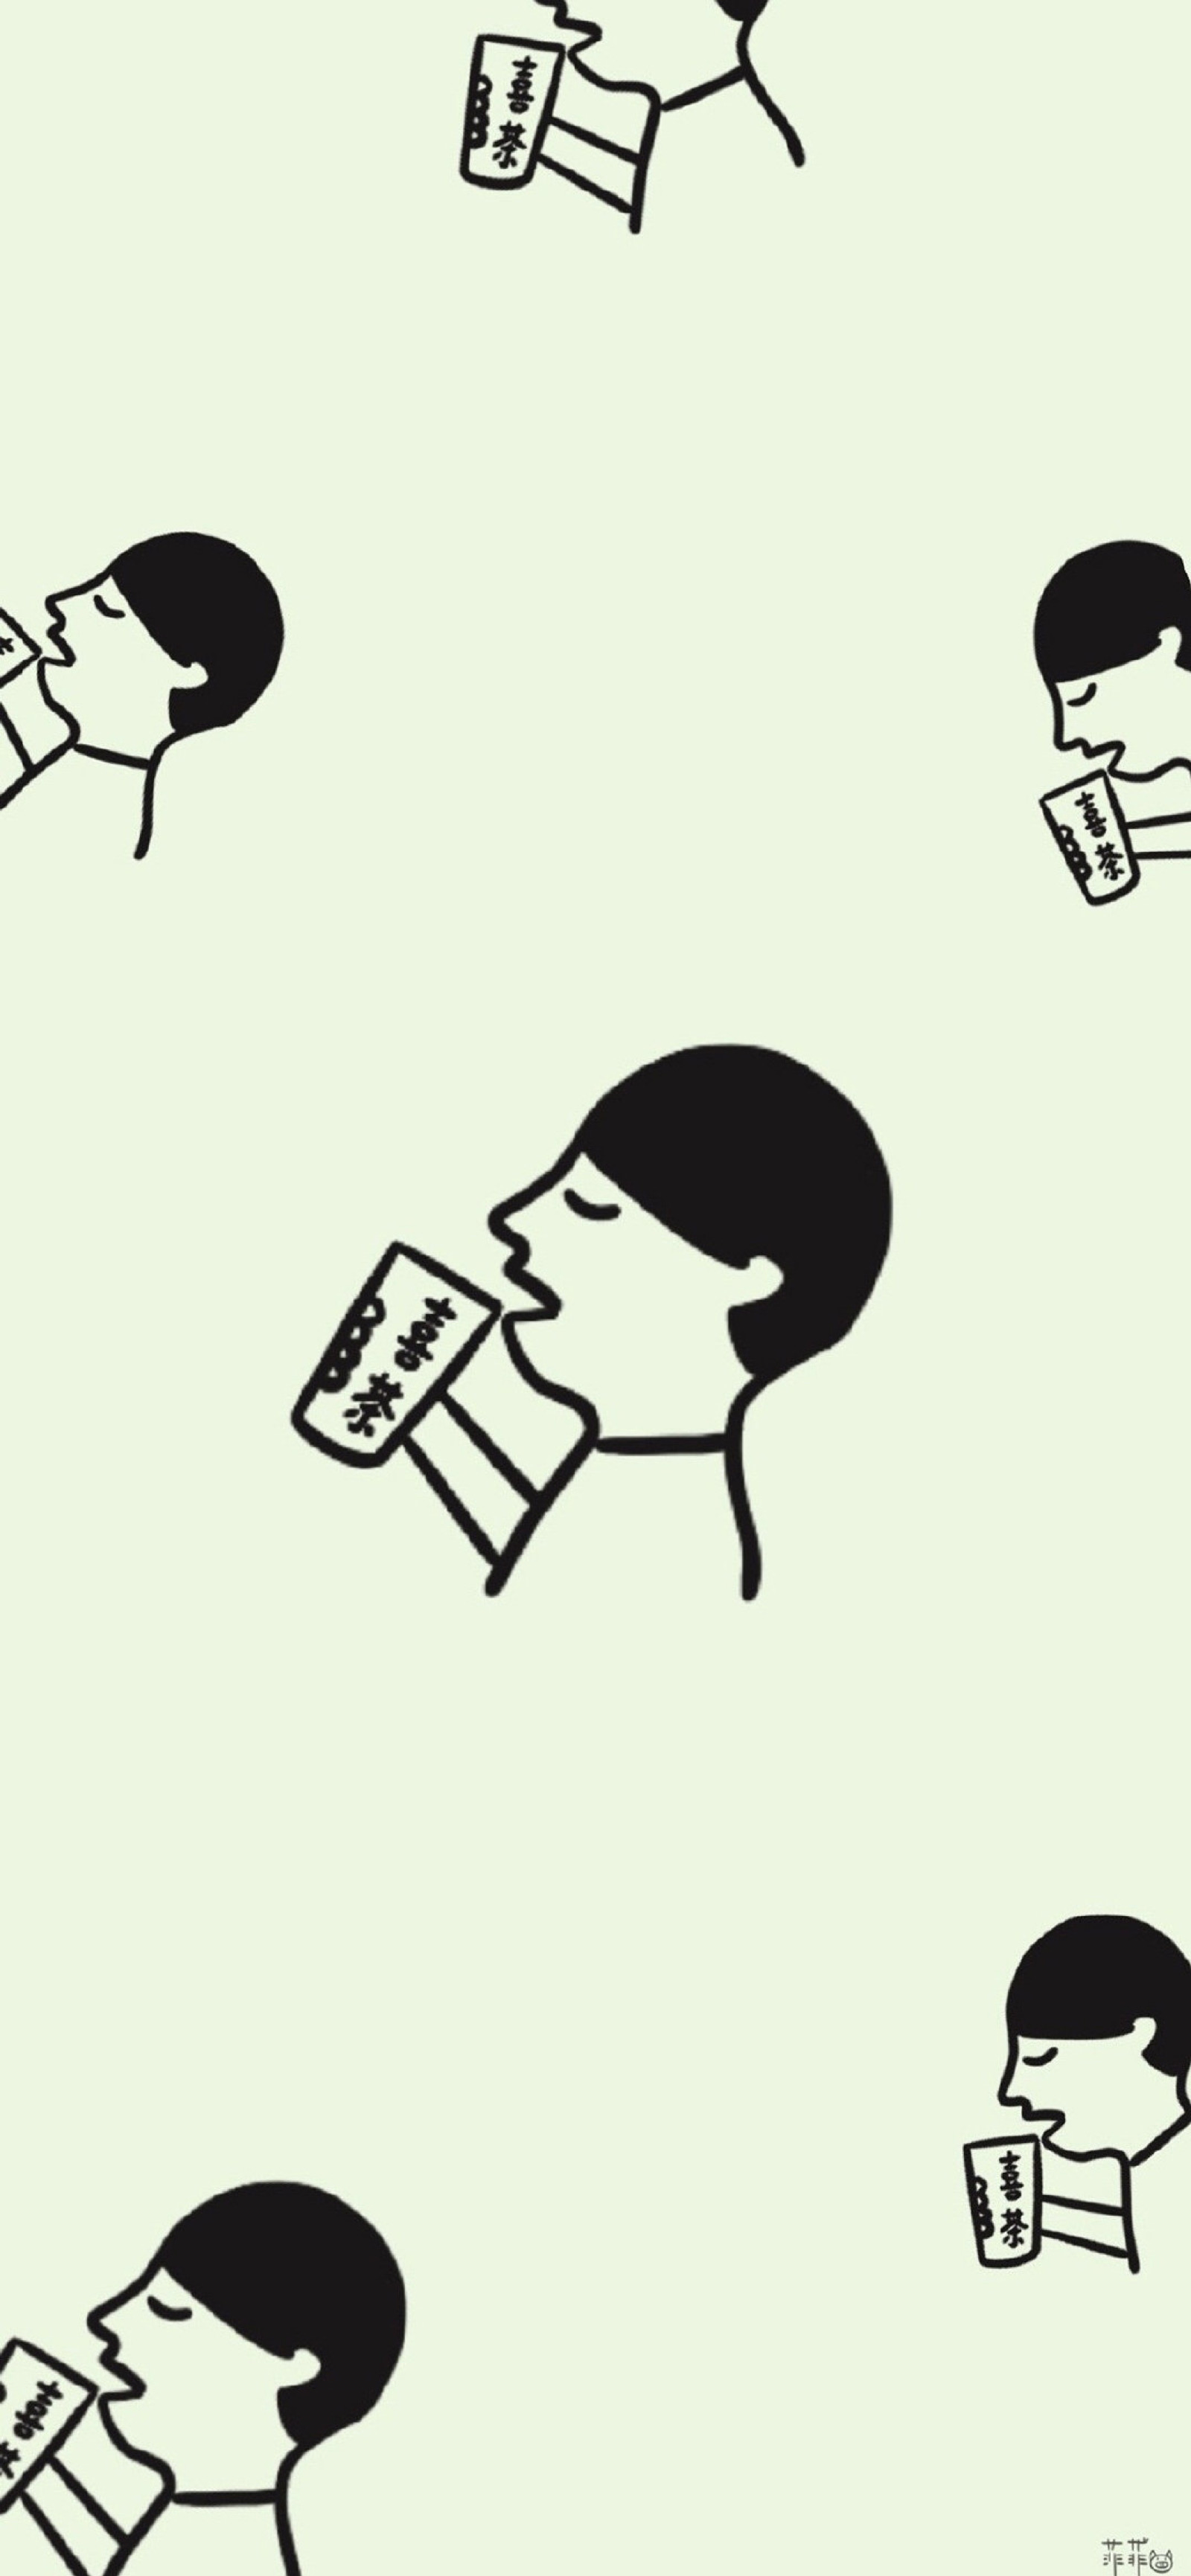 壁纸 - 经典奶茶品牌插画 素材 ins 韩系 可爱 简约 手绘 动漫 锁屏